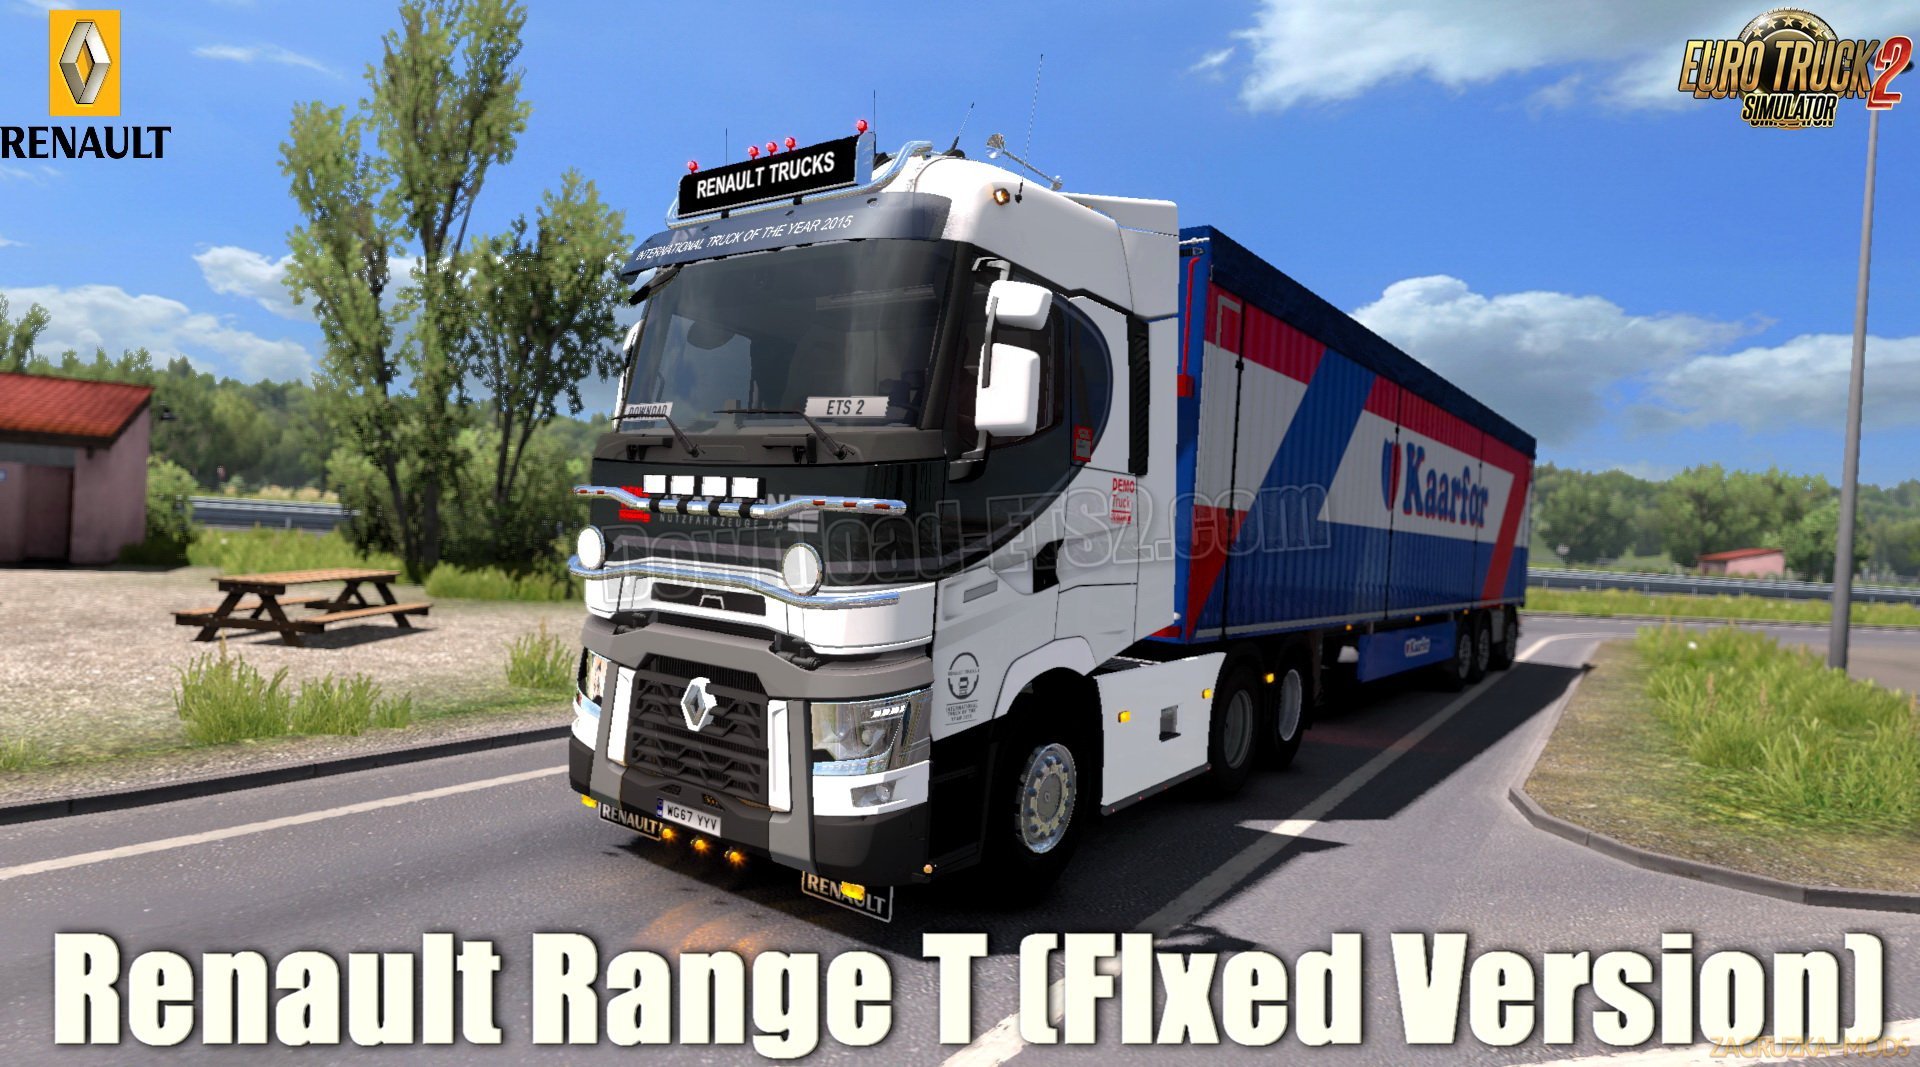 Renault Range T (Fixed Version) v7.3 (1.32.x) for ETS 2